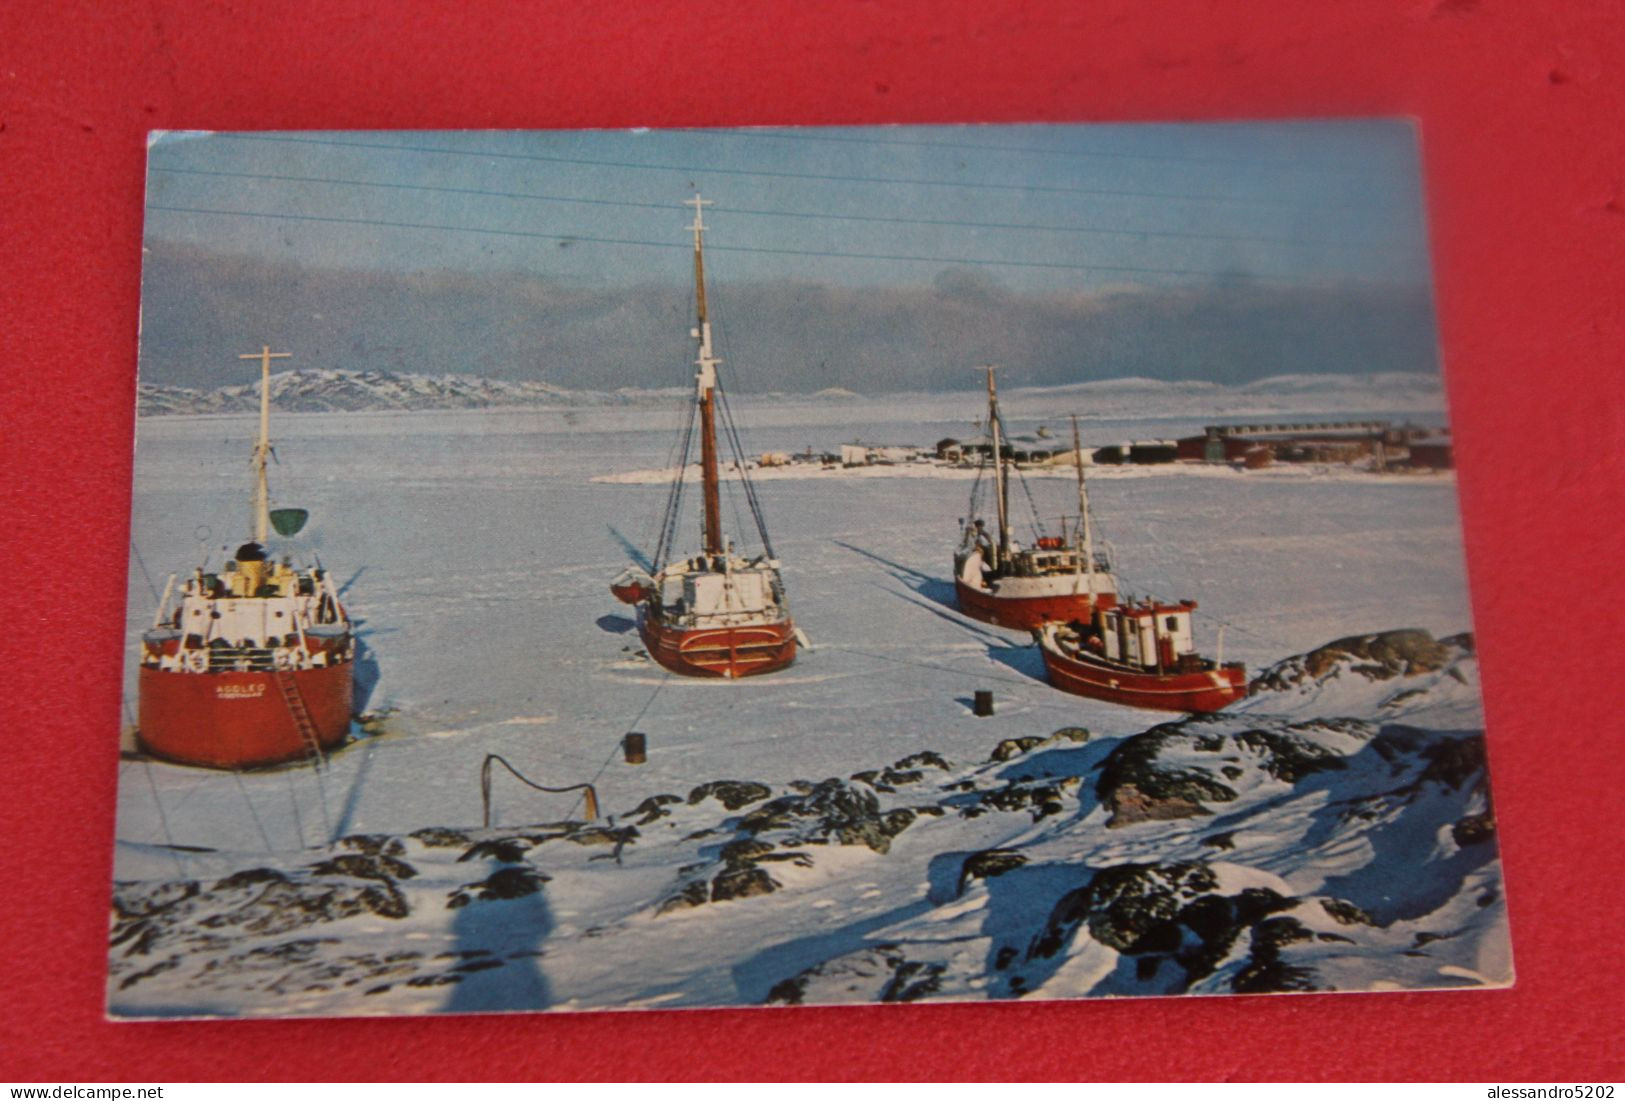 Gronland Greenland Egedesminde 1972 - Grönland